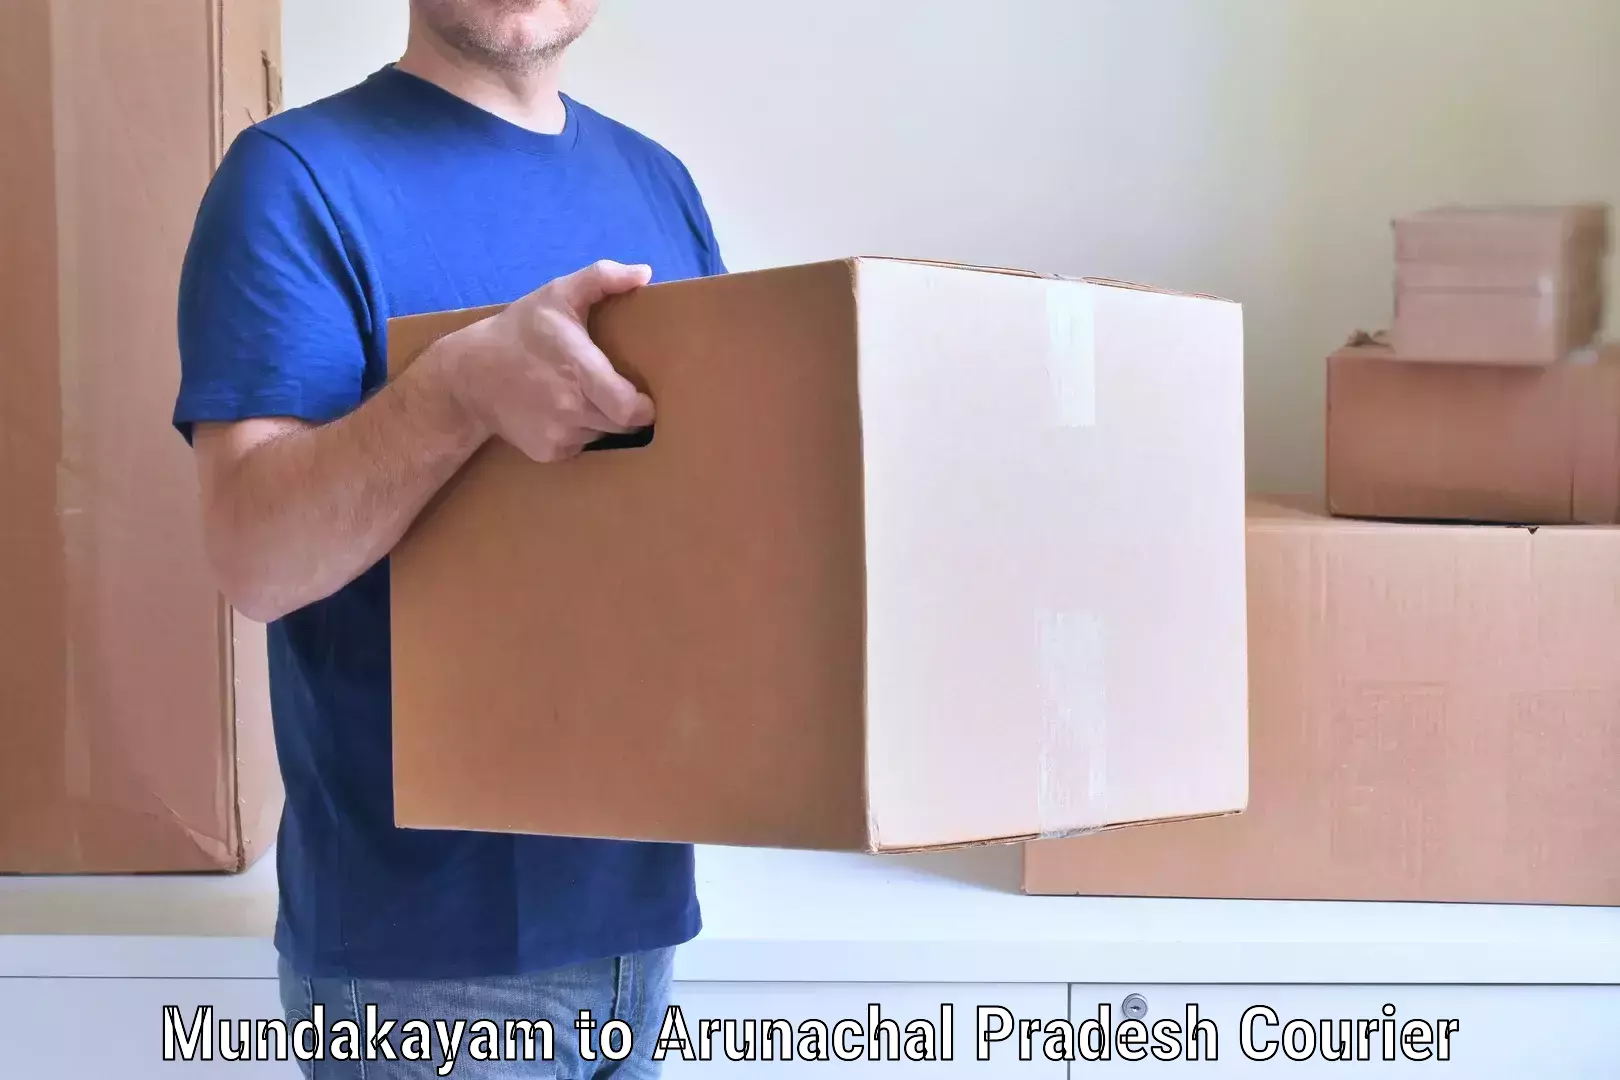 Moving and packing experts Mundakayam to Jairampur